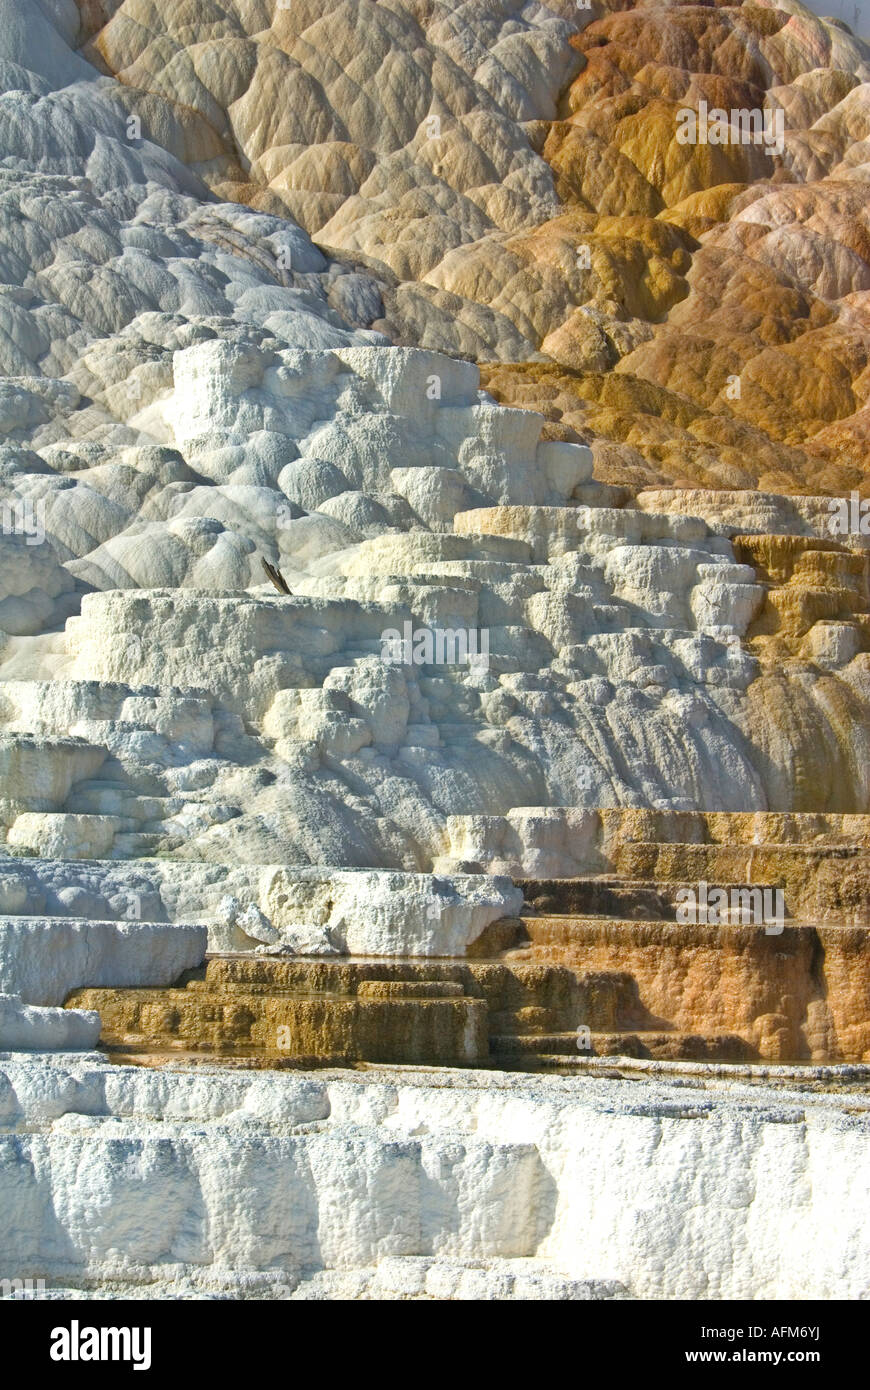 Mommoth Hot Springs Parc National de YellowStone terrasses faites de carbonate de calcium cristallisé Banque D'Images